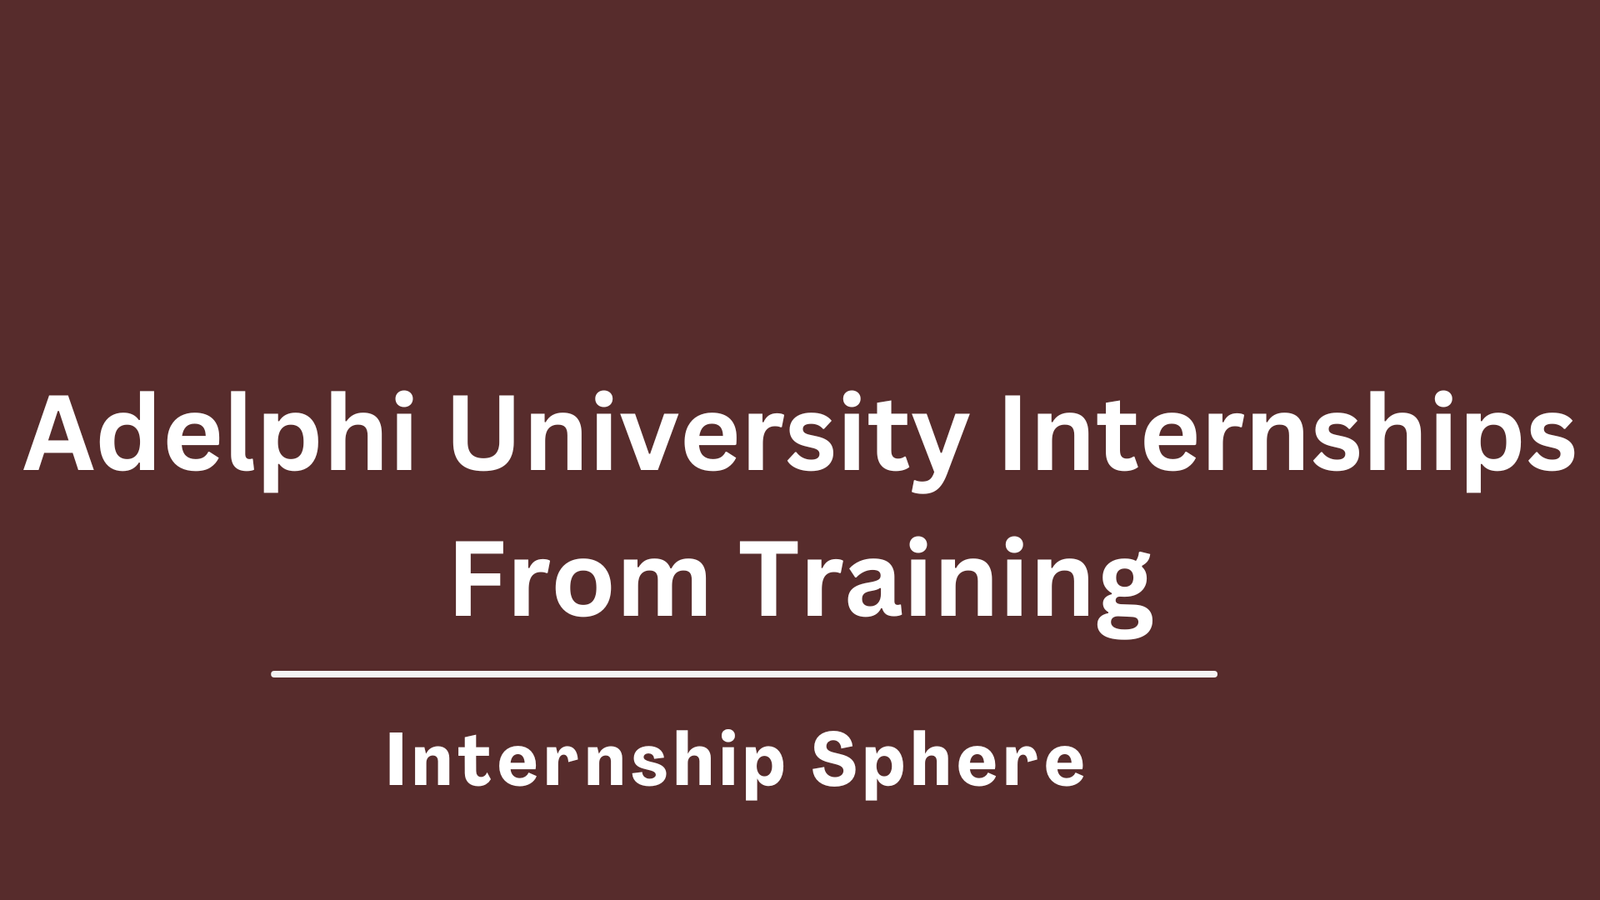 Adelphi University Internships